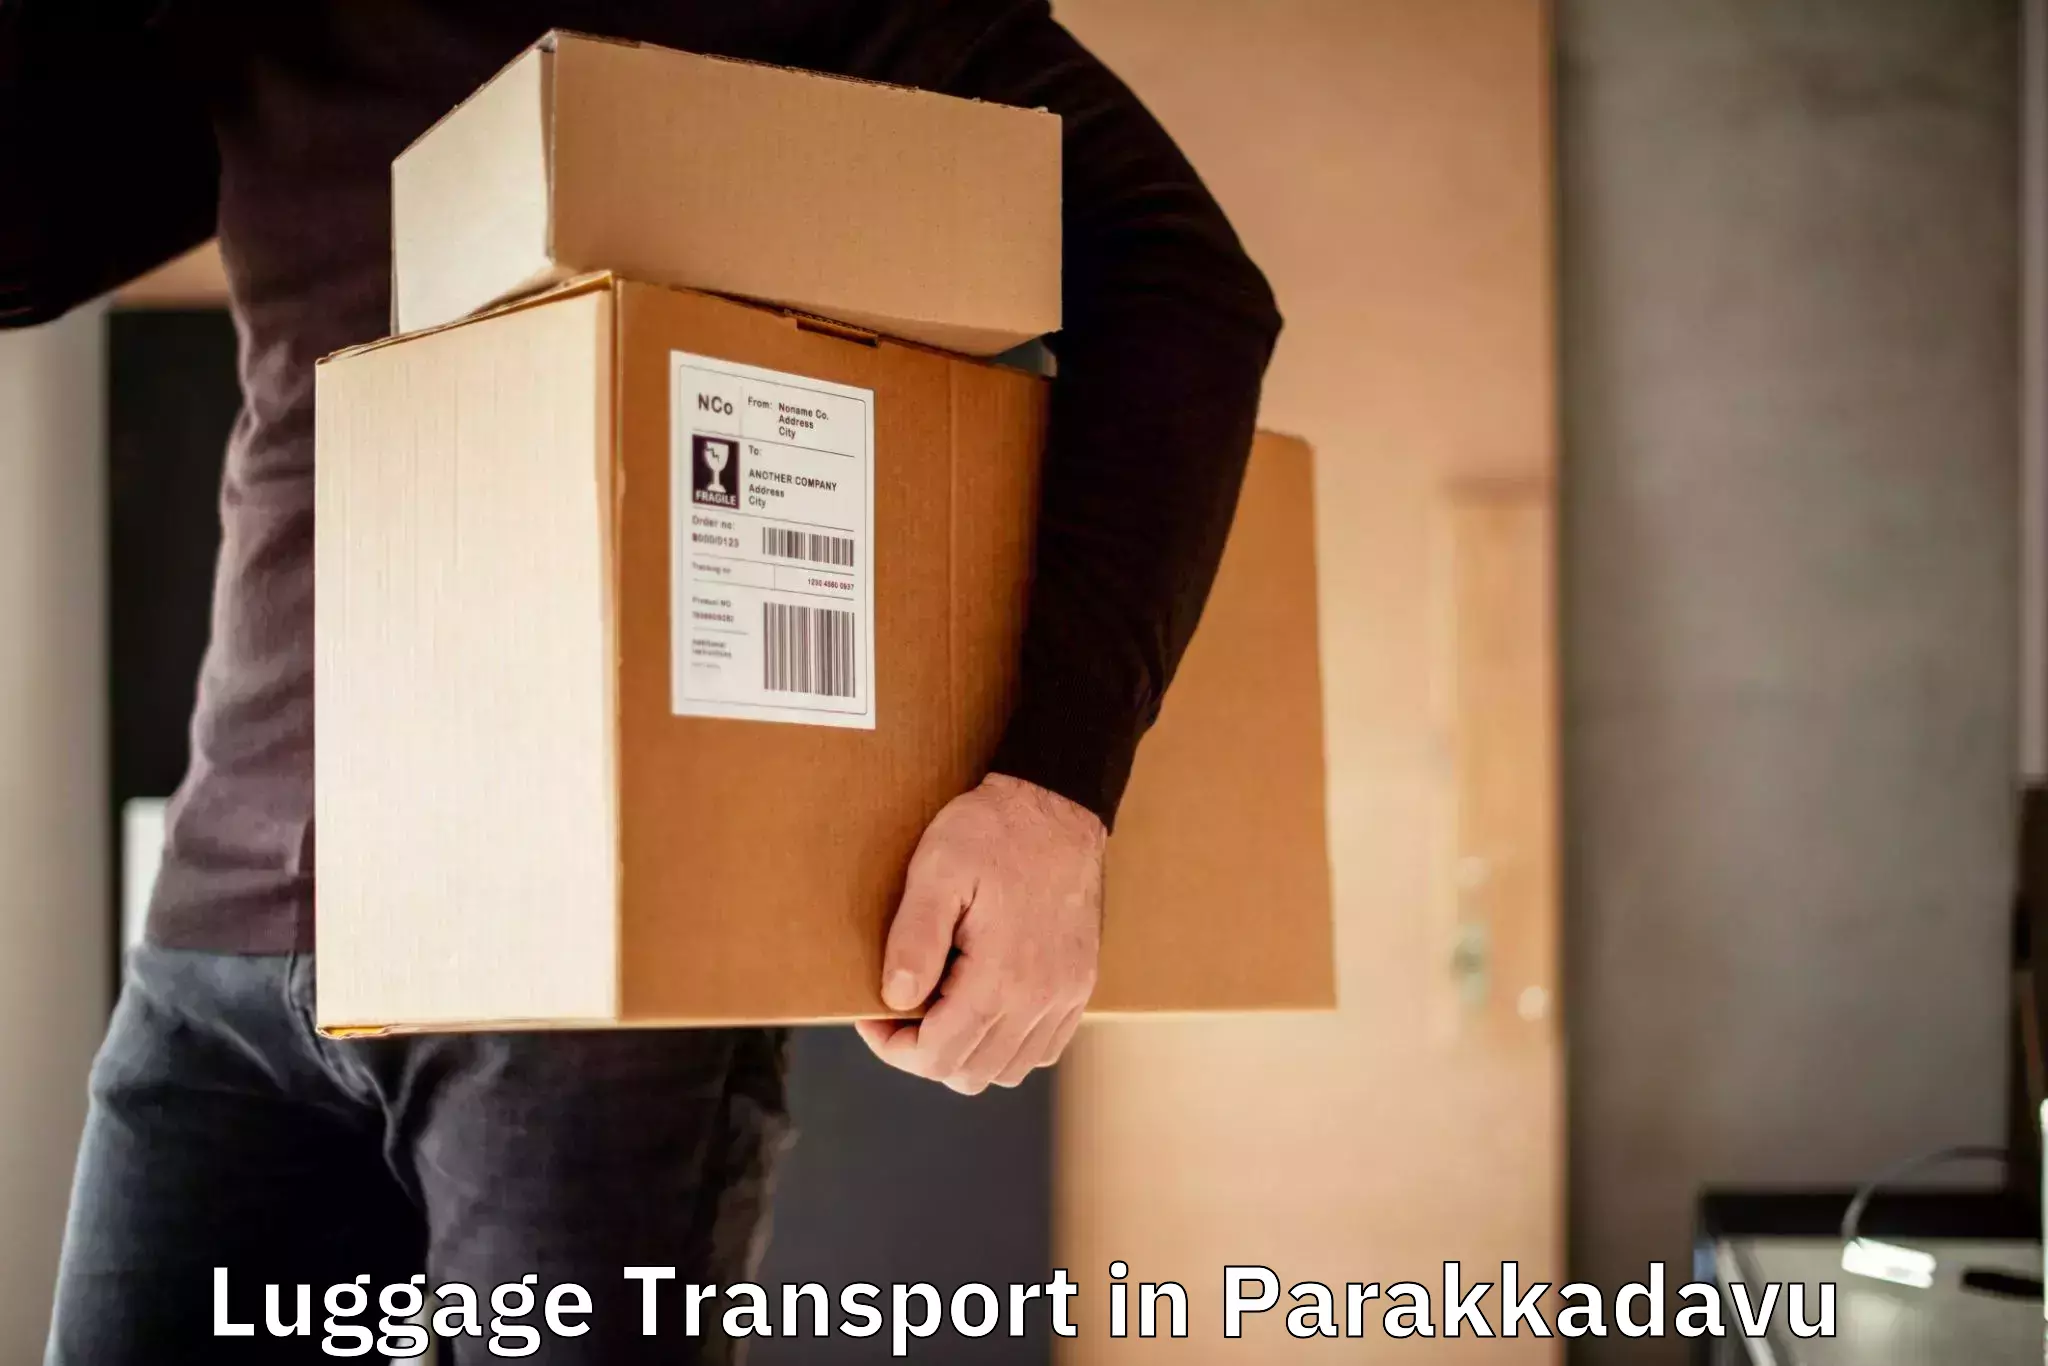 Same day baggage transport in Parakkadavu